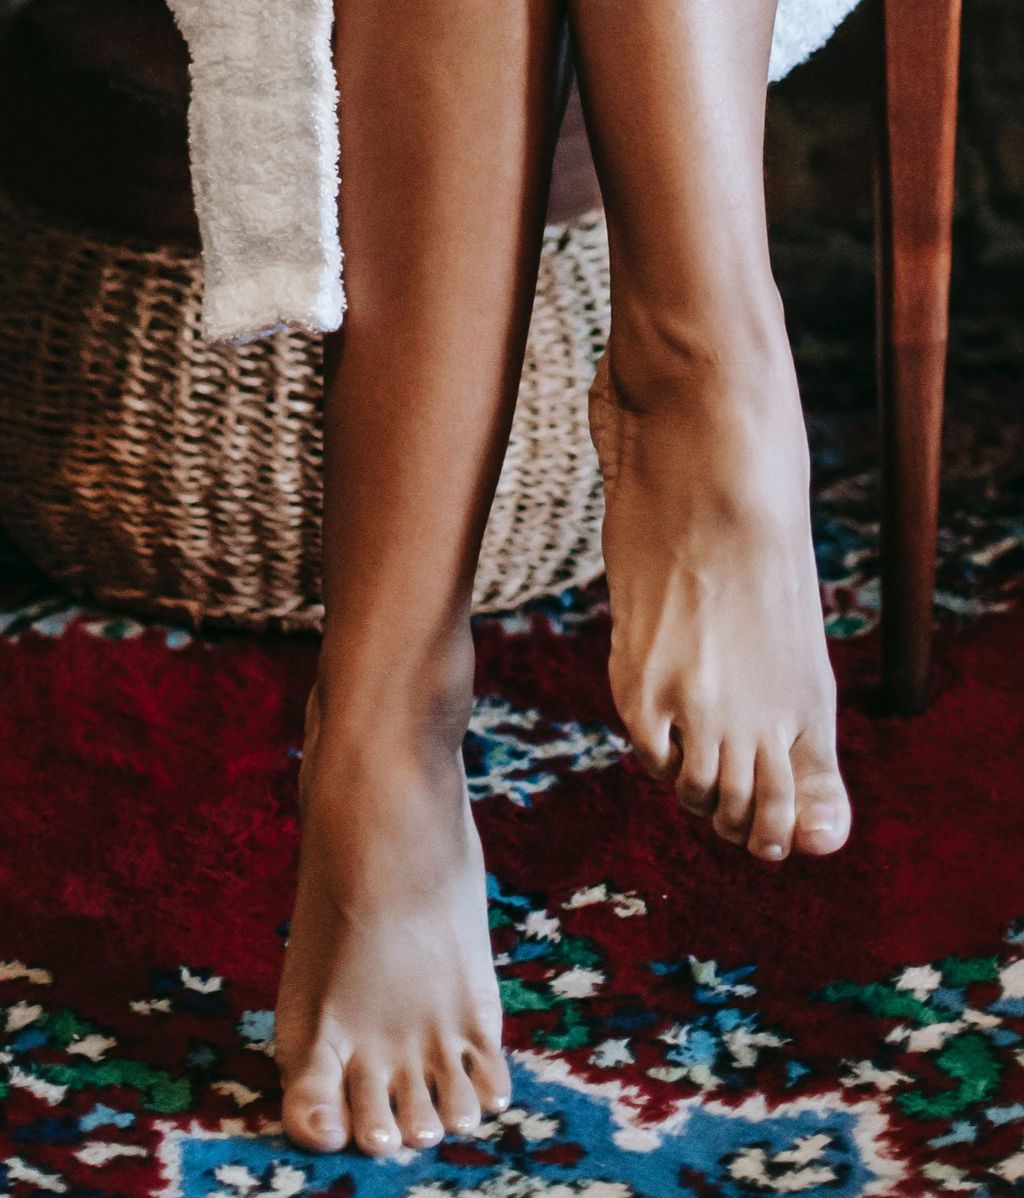 Las alfombras son un elemento decorativo ideal. FUENTE: Pexels